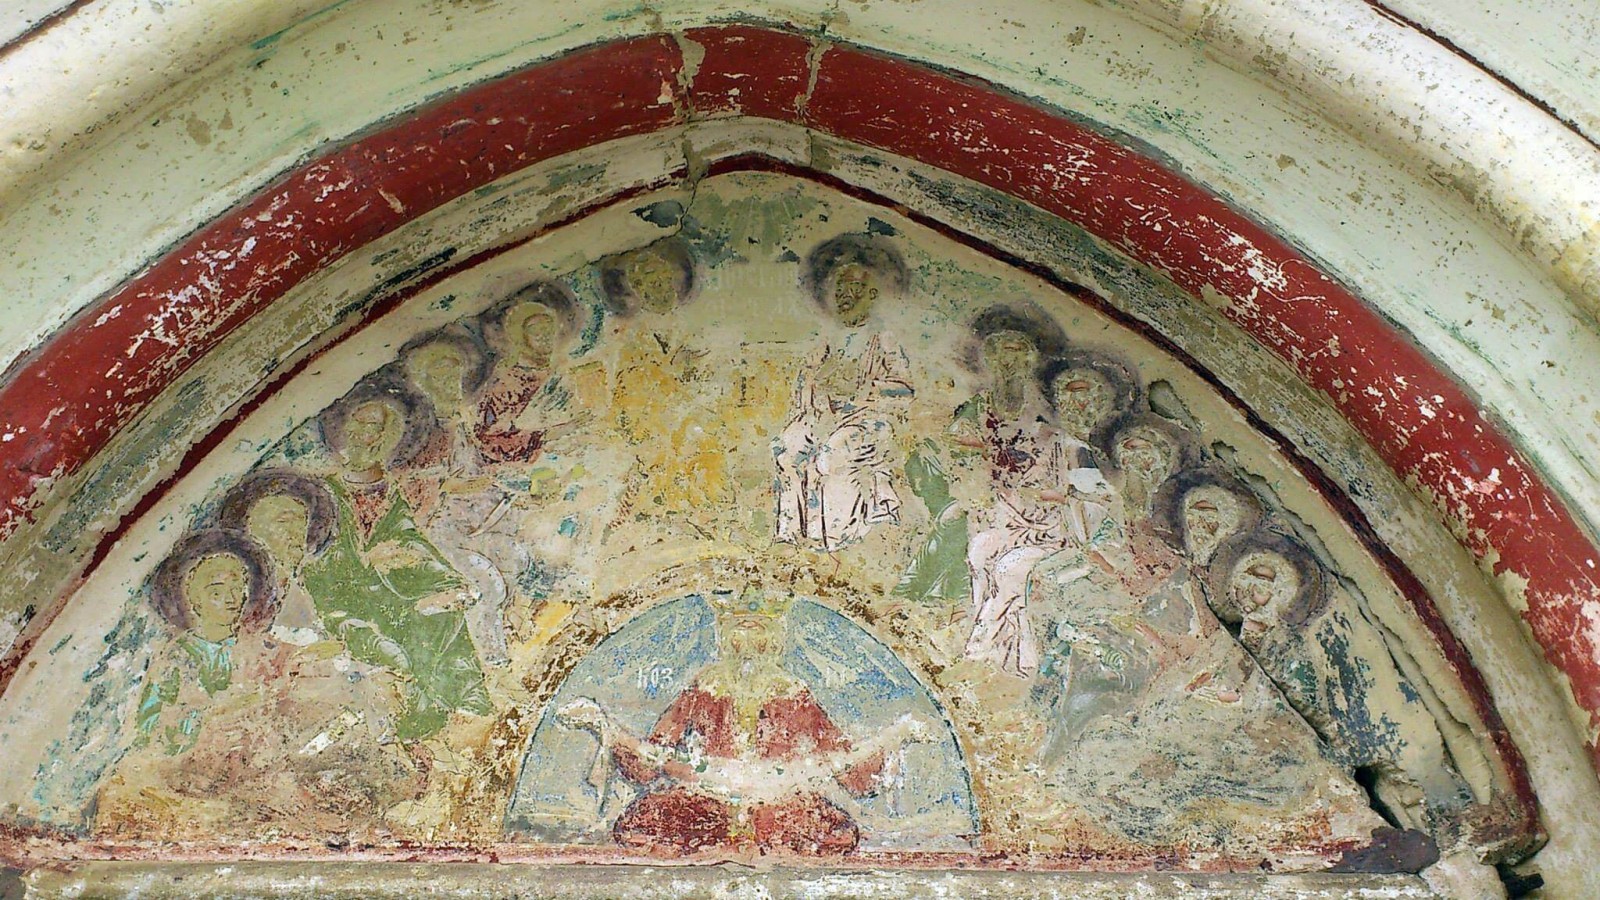 Mănăstirea Dobrovăț